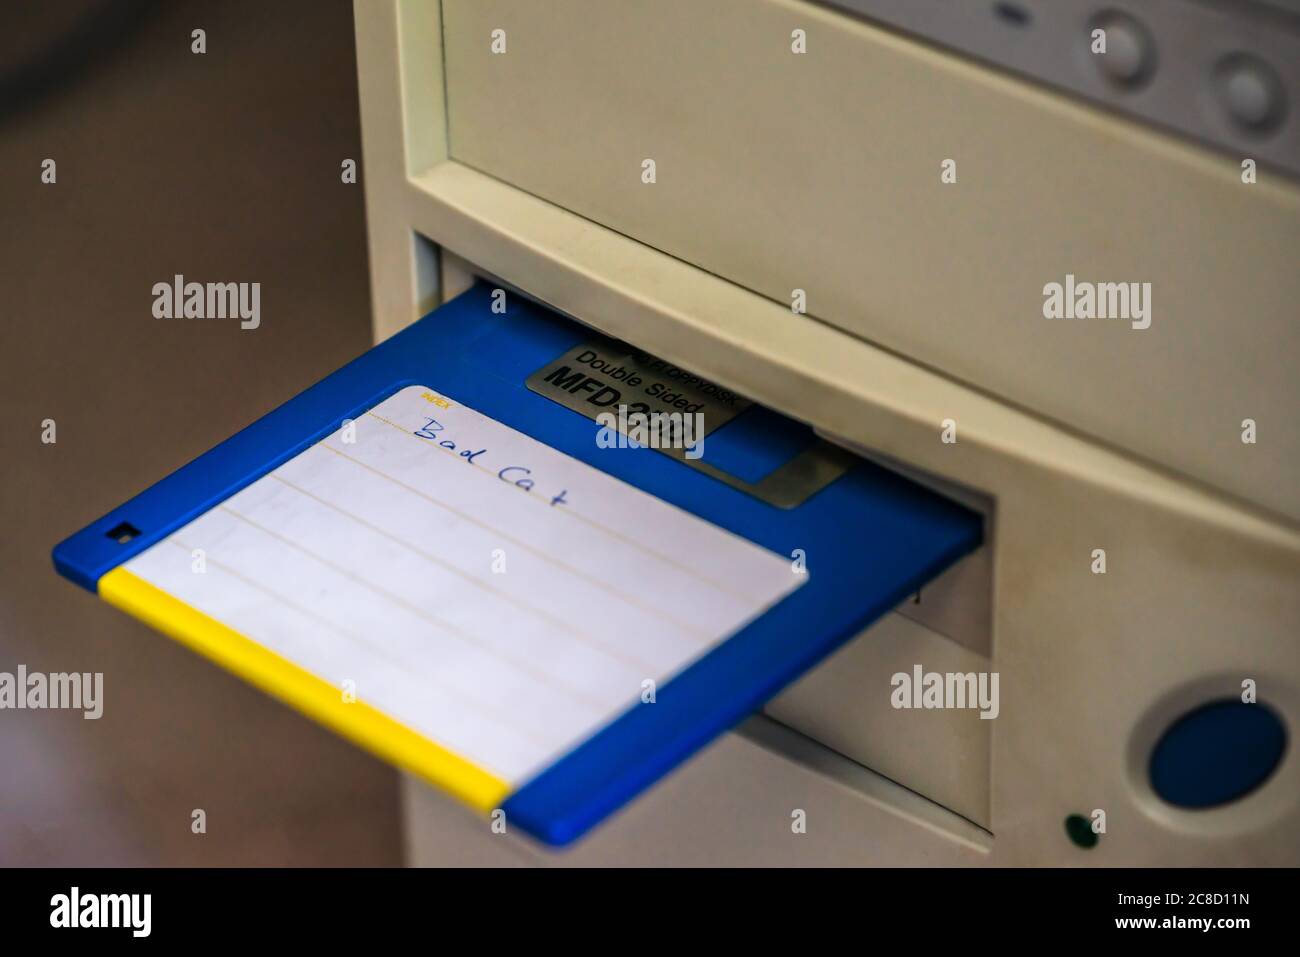 Eine alte, veraltete Diskette, die in ein PC-/Computerlaufwerk eingelegt wurde Stockfoto